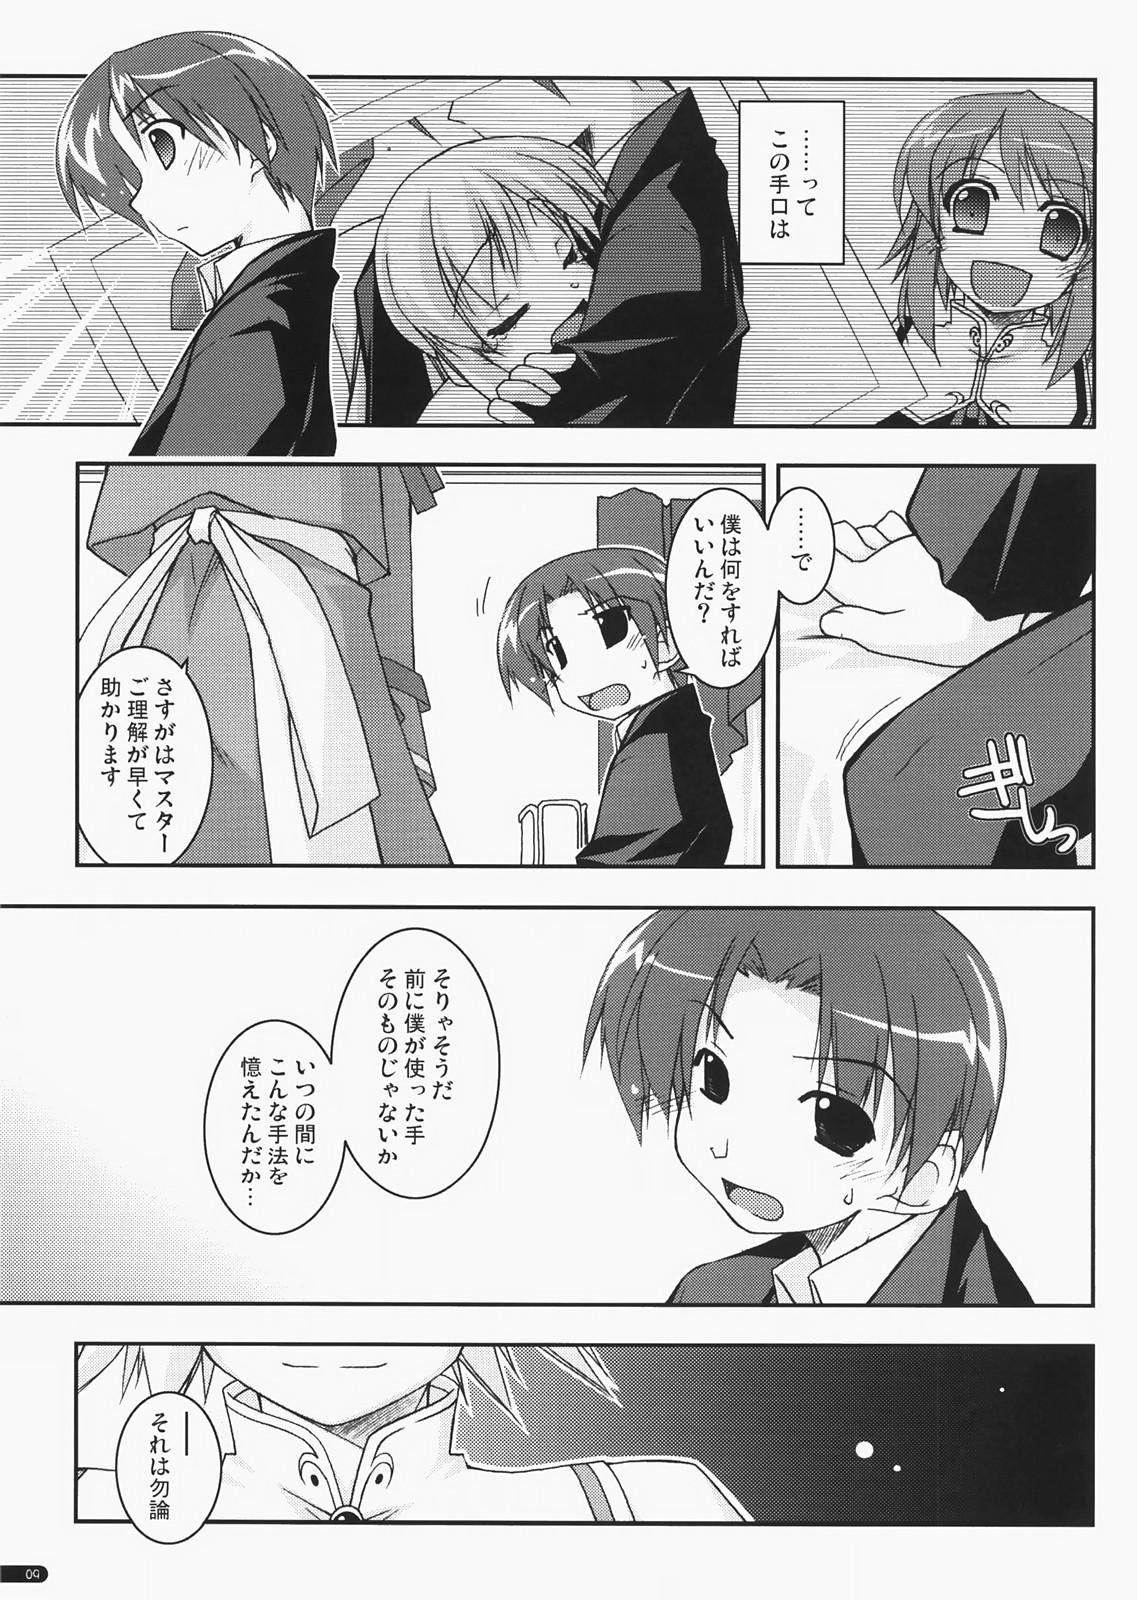 Nalgas case of "Leader-san" - Haruka ni aogi uruwashi no Safada - Page 8